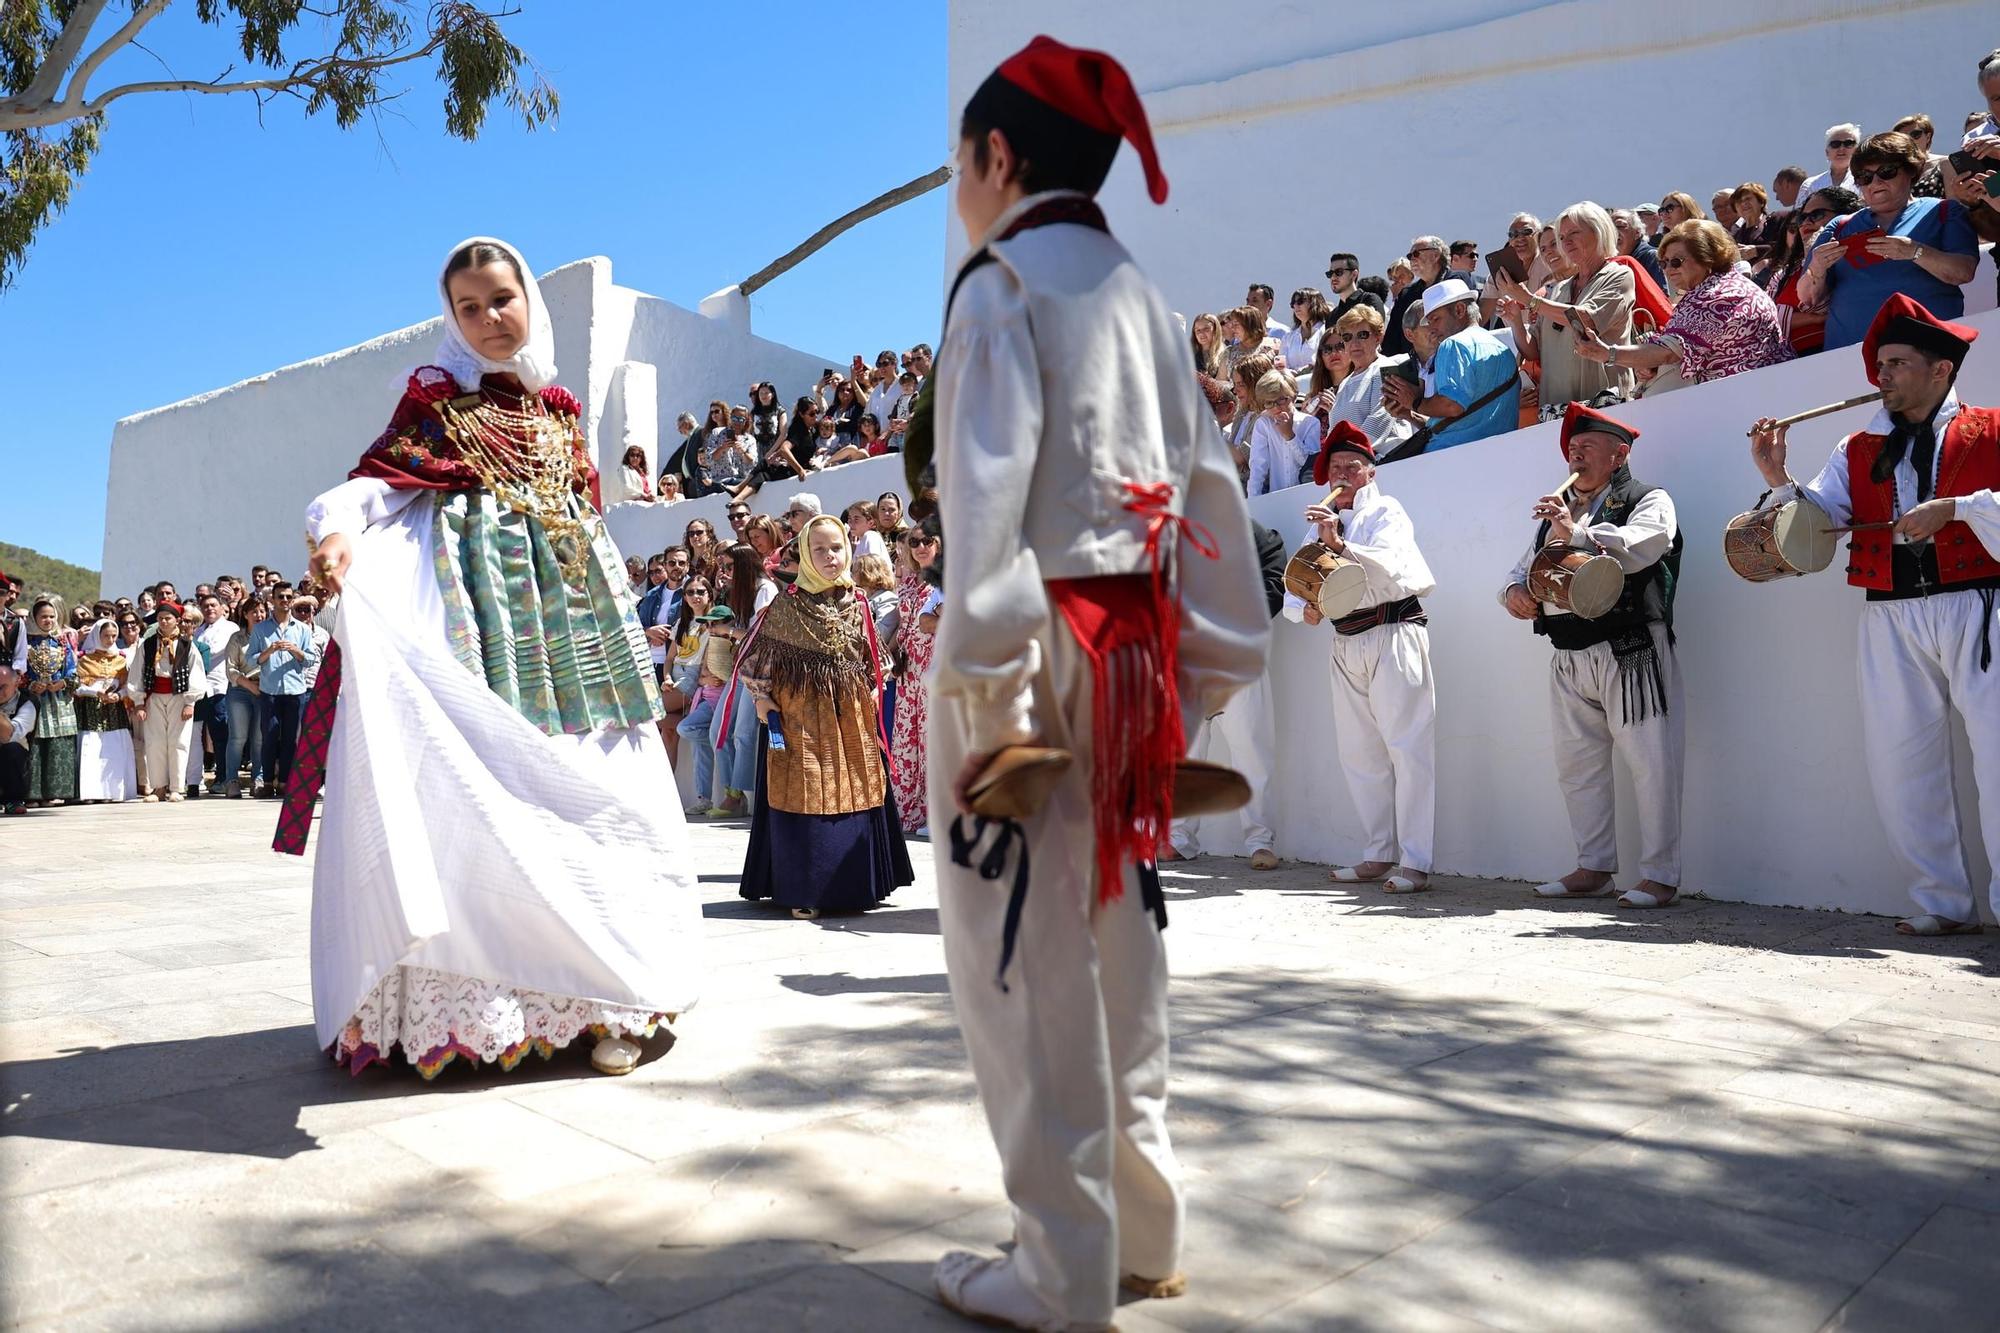 Galería: Mira aquí todas las fotos de las fiestas Anar a Maig en Santa Eulària